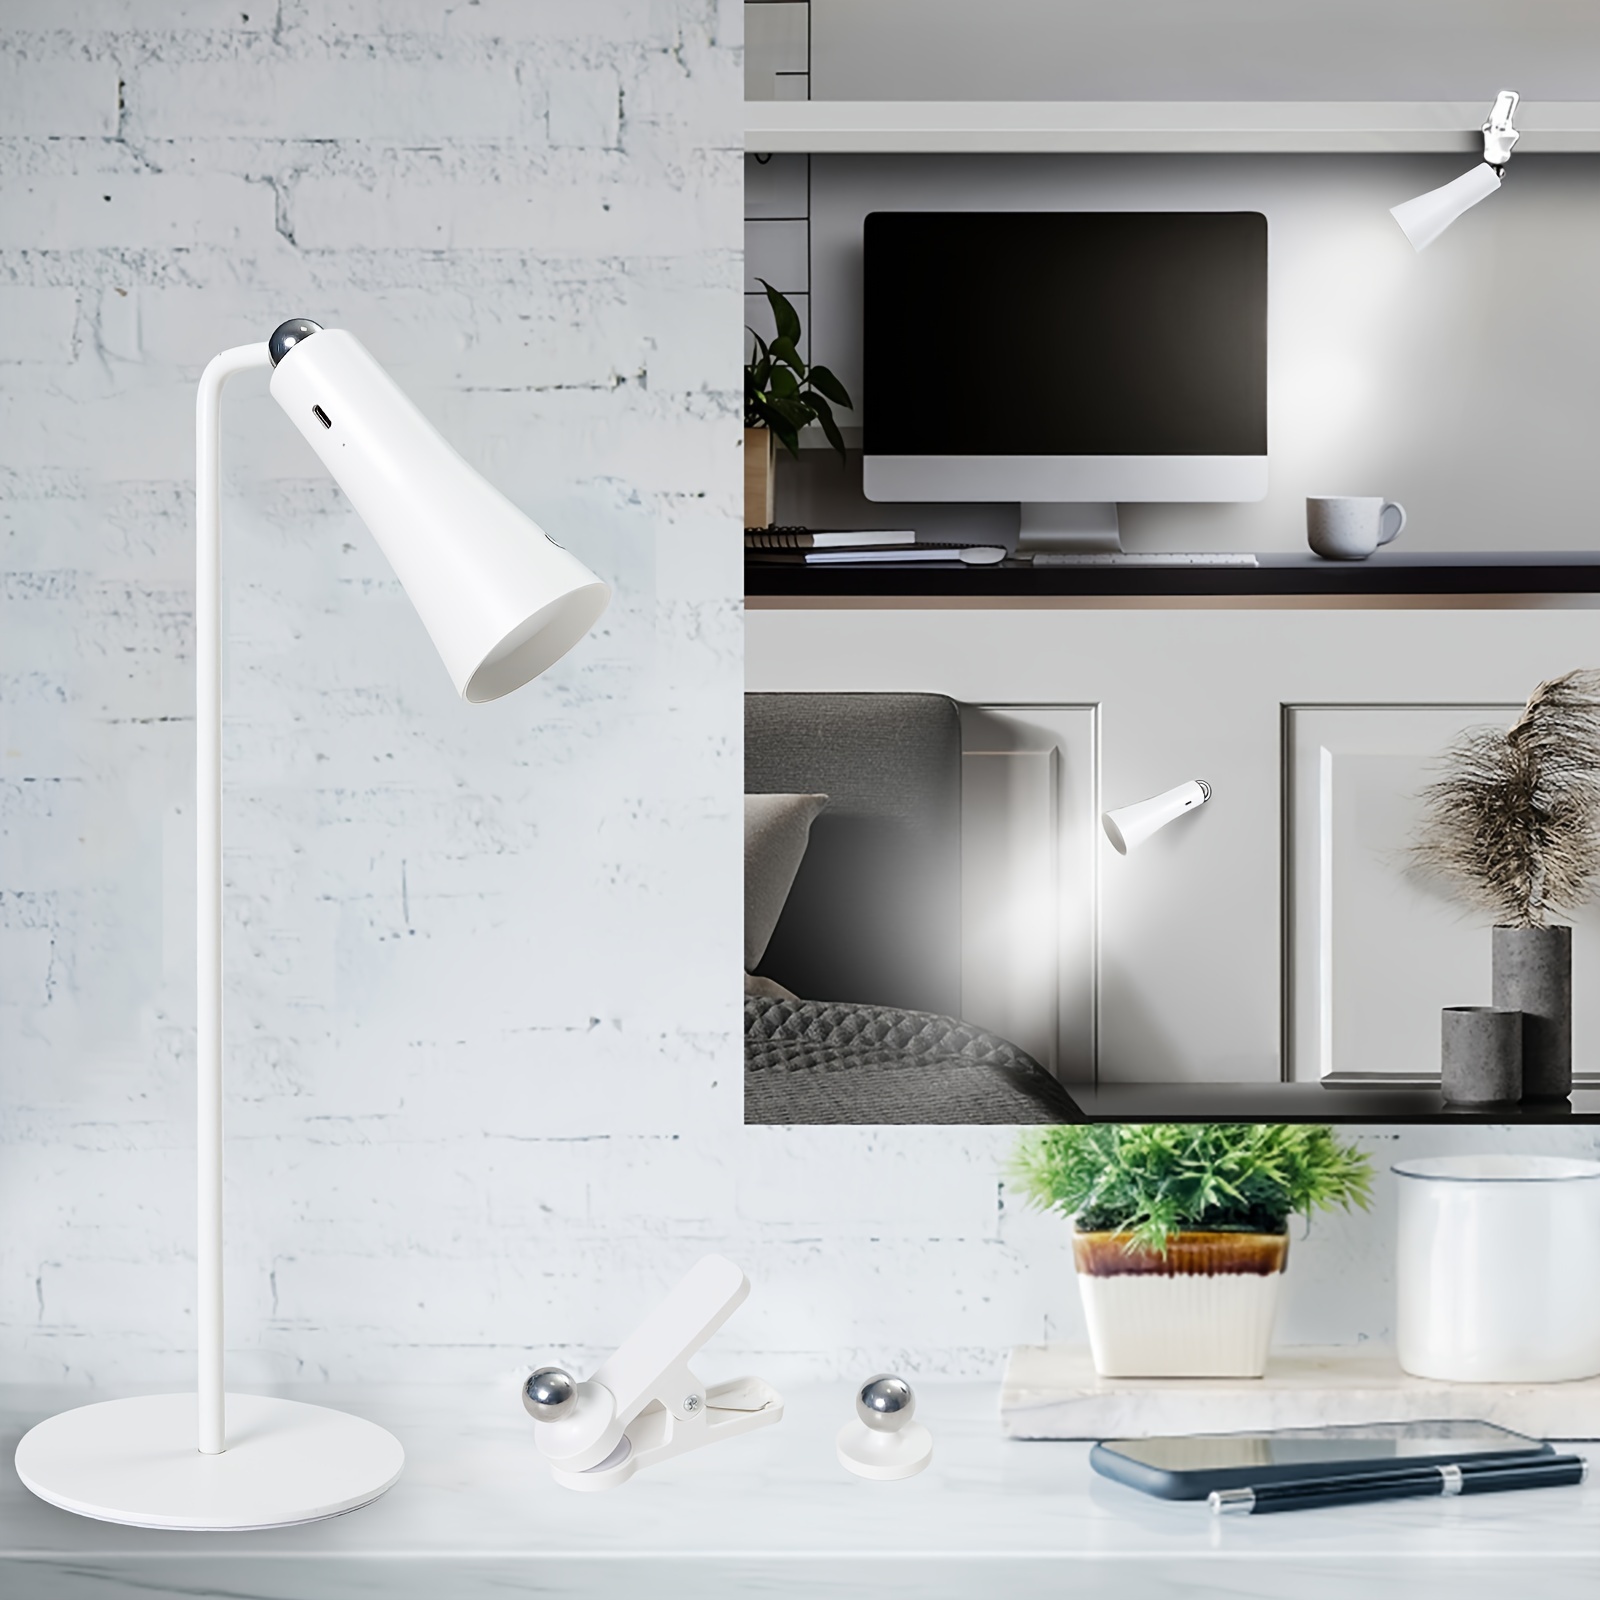 Chargement USB Lampes de table sans fil, lampe de bureau LED rechargeable  1800mA , 3 modes de couleur